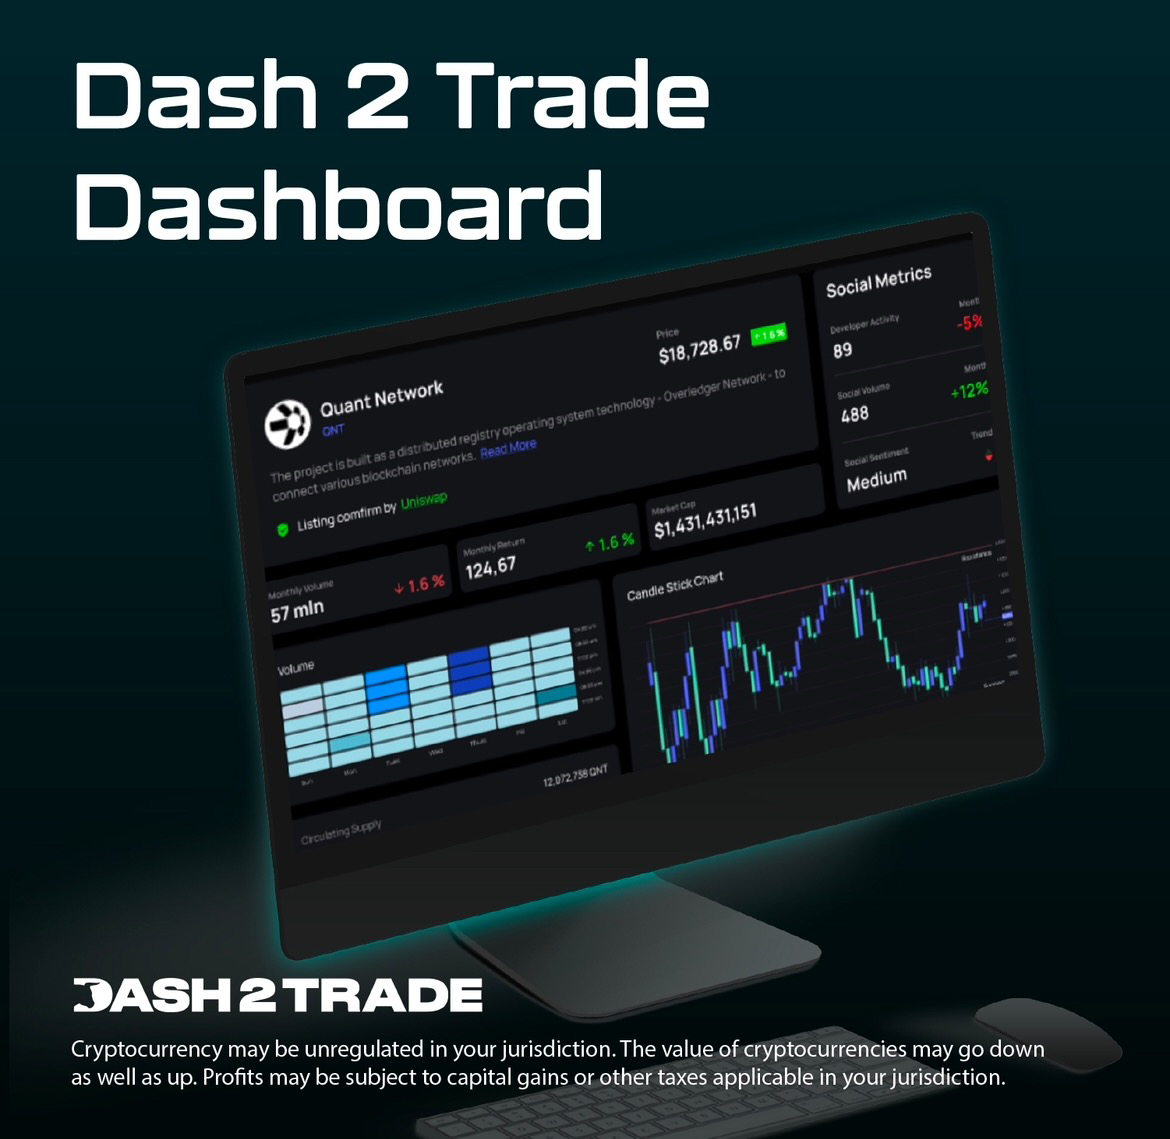 ICO di Dash 2 Trade raccoglie $500k in 24 ore e va a $12,5m, mancano 3 giorni alla fine della prevendita